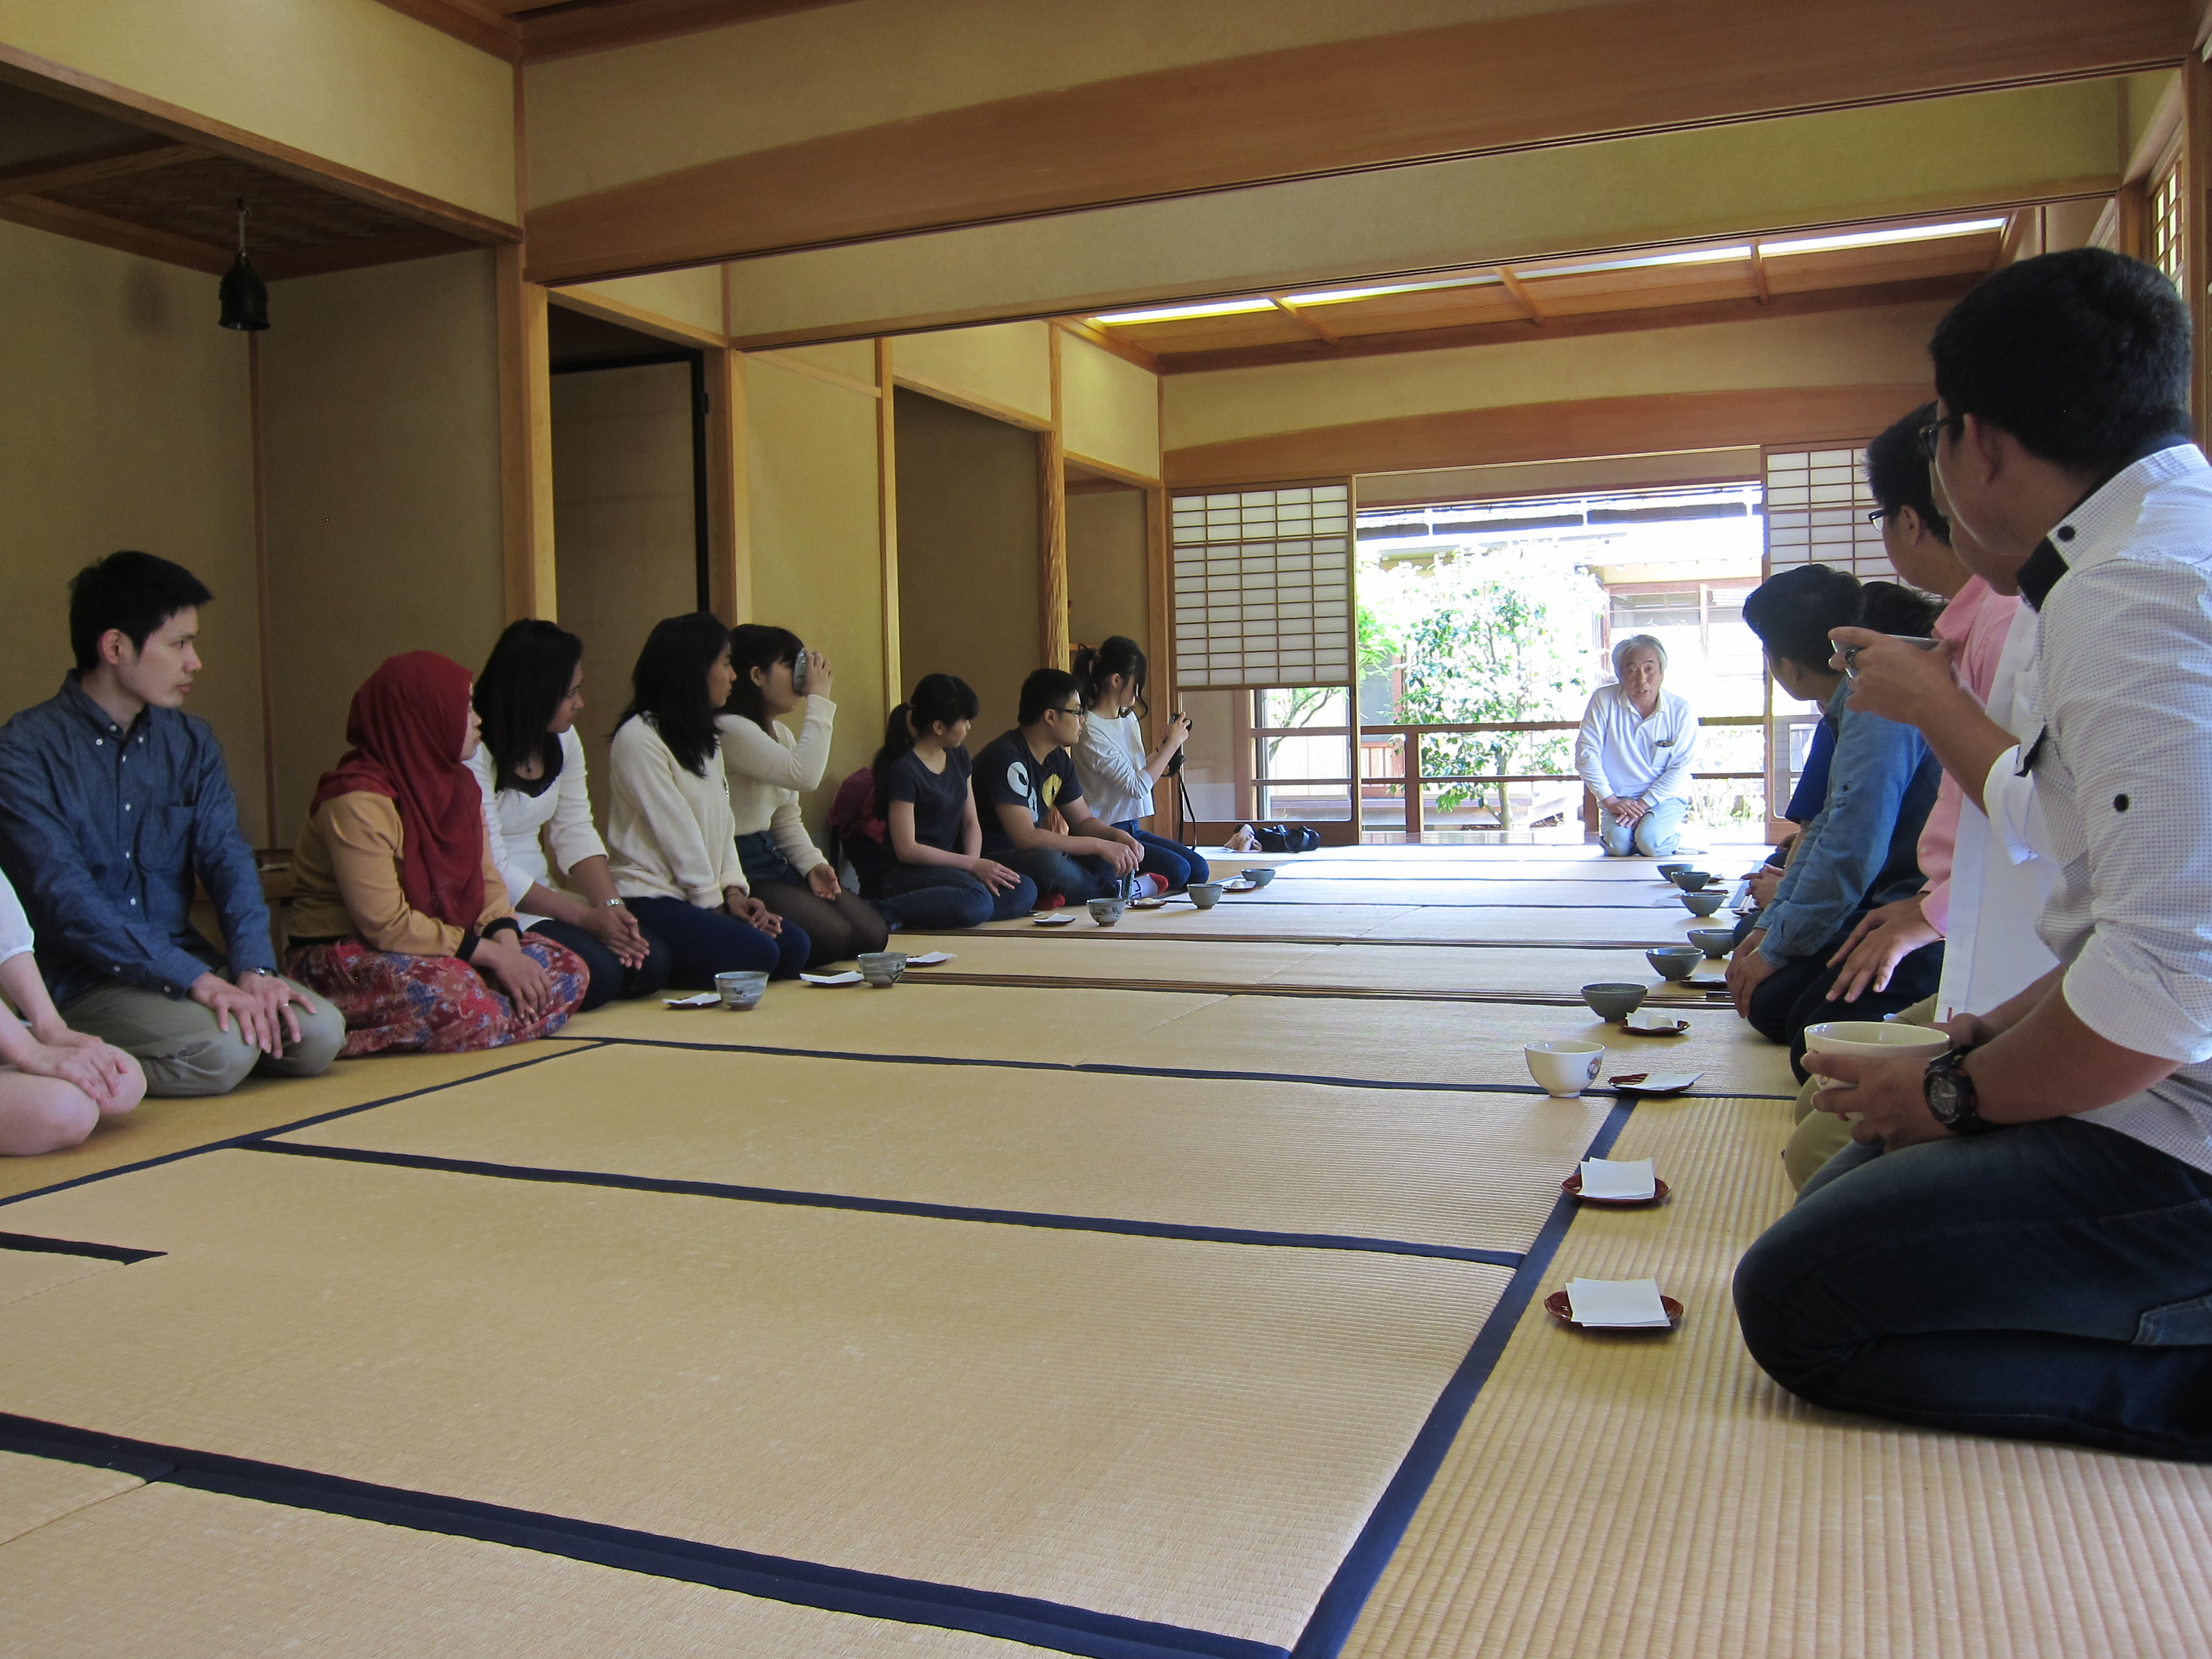 お茶摘み＆お茶席を体験！ アジアの学生さん達と日本を感じる。